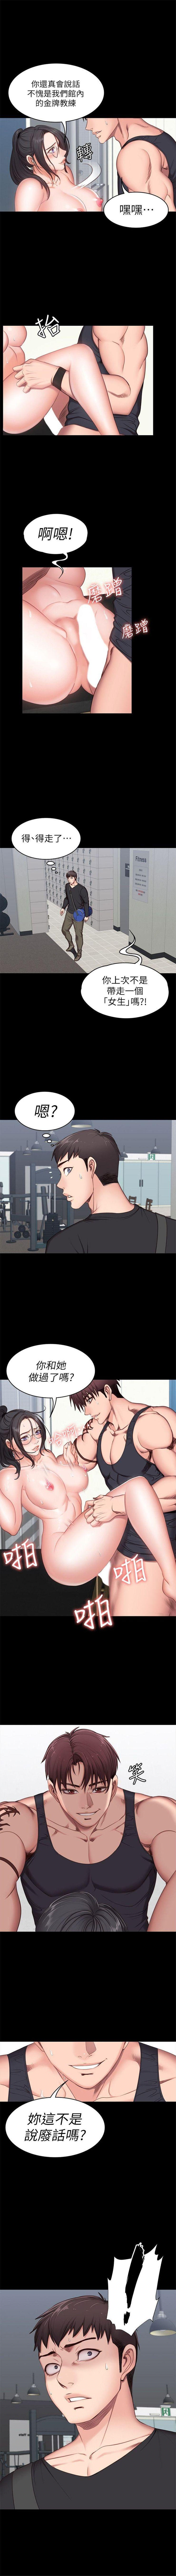 健身教练1-25 中文翻译 （更新中） 31